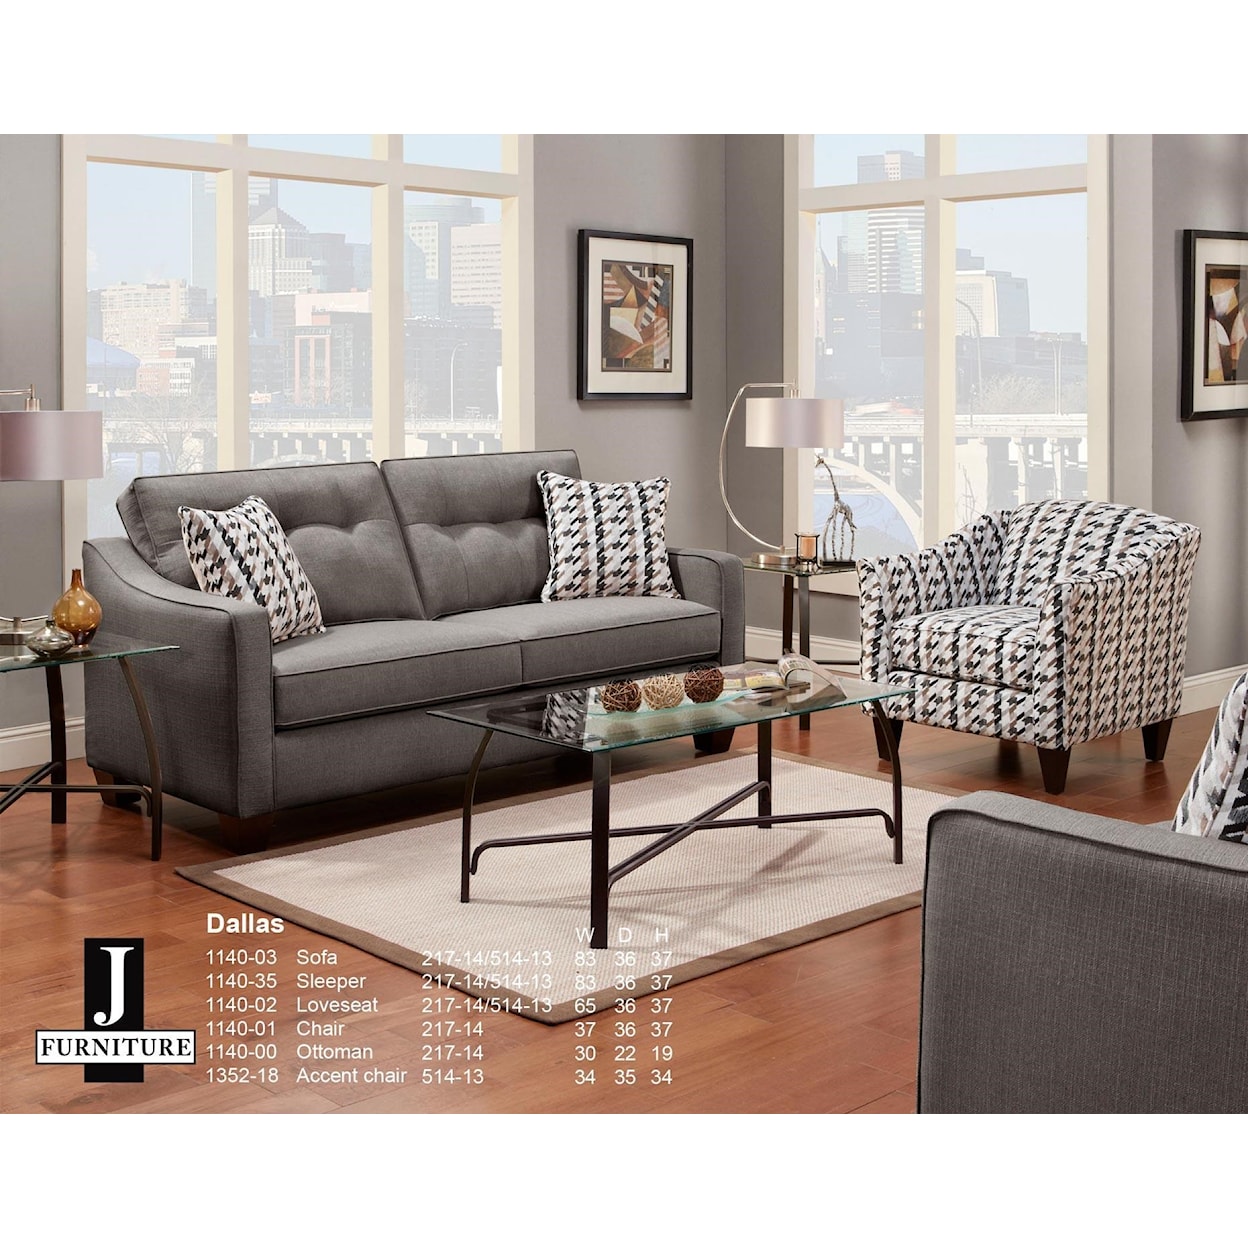 Wayside Furniture Dallas - 1140 Dallas Sofa